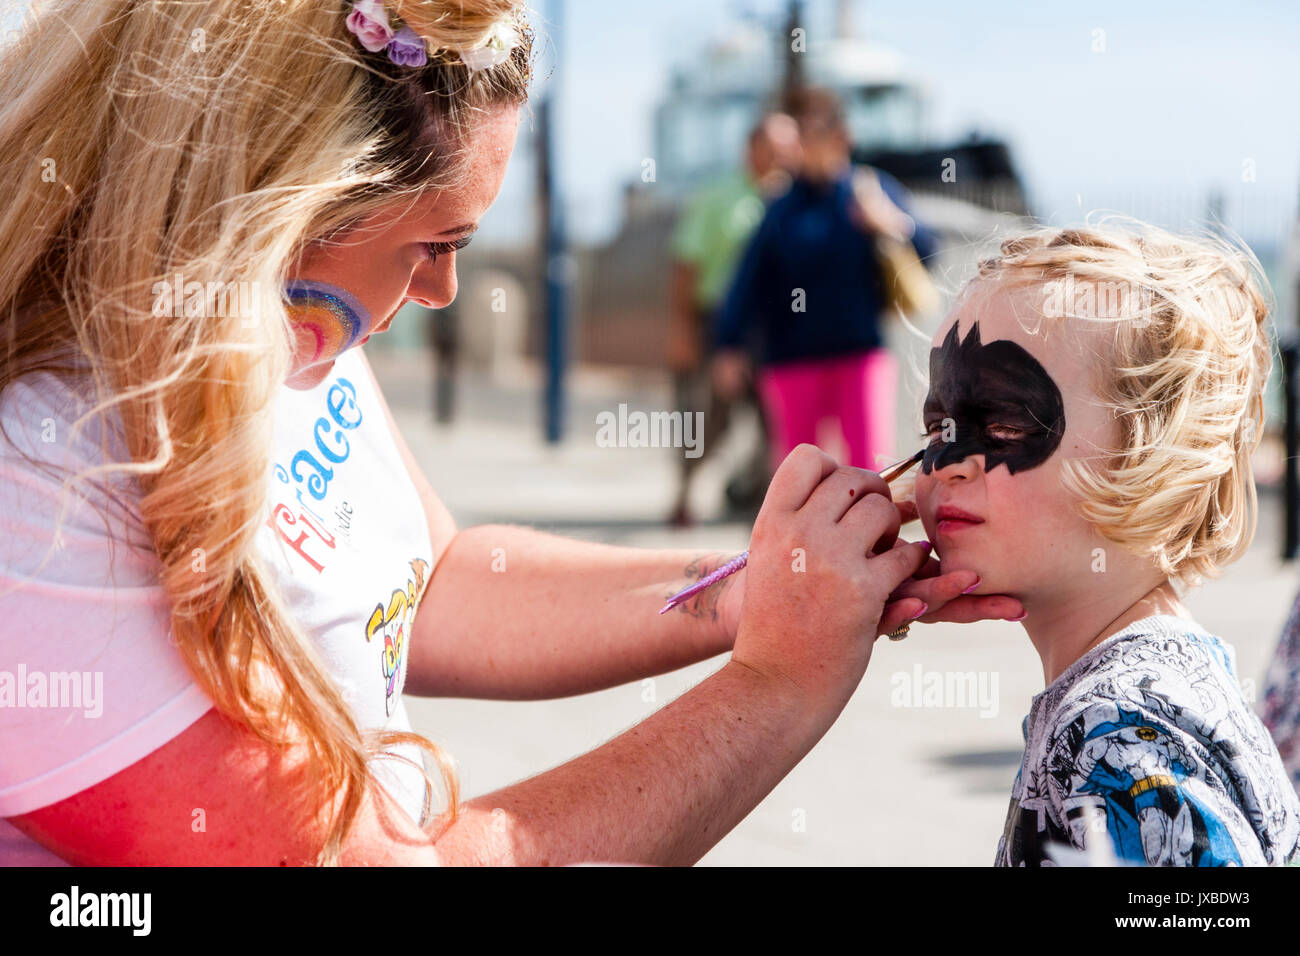 Junge kaukasier Kind, Mädchen, 5-6 Jahre alt, saß in der Sonne Ihr Gesicht mit einer Art Batman Maske durch die blonde Frau gemalt haben. Stockfoto